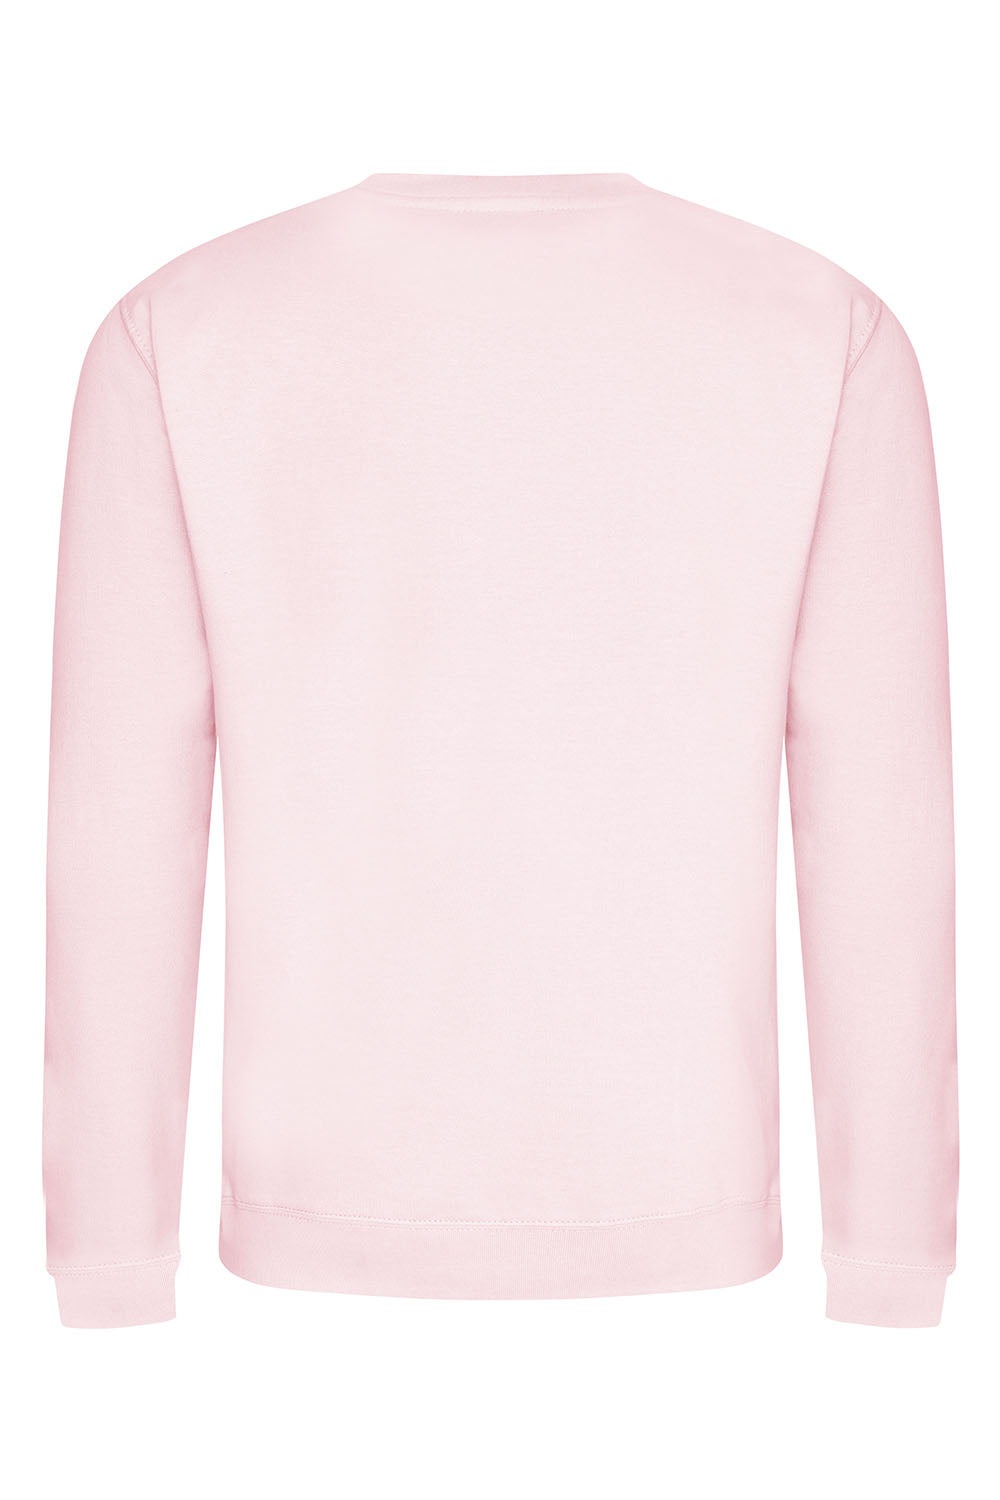 Cherish the Cherries Sweatshirt In Baby Pink (Custom Pack)